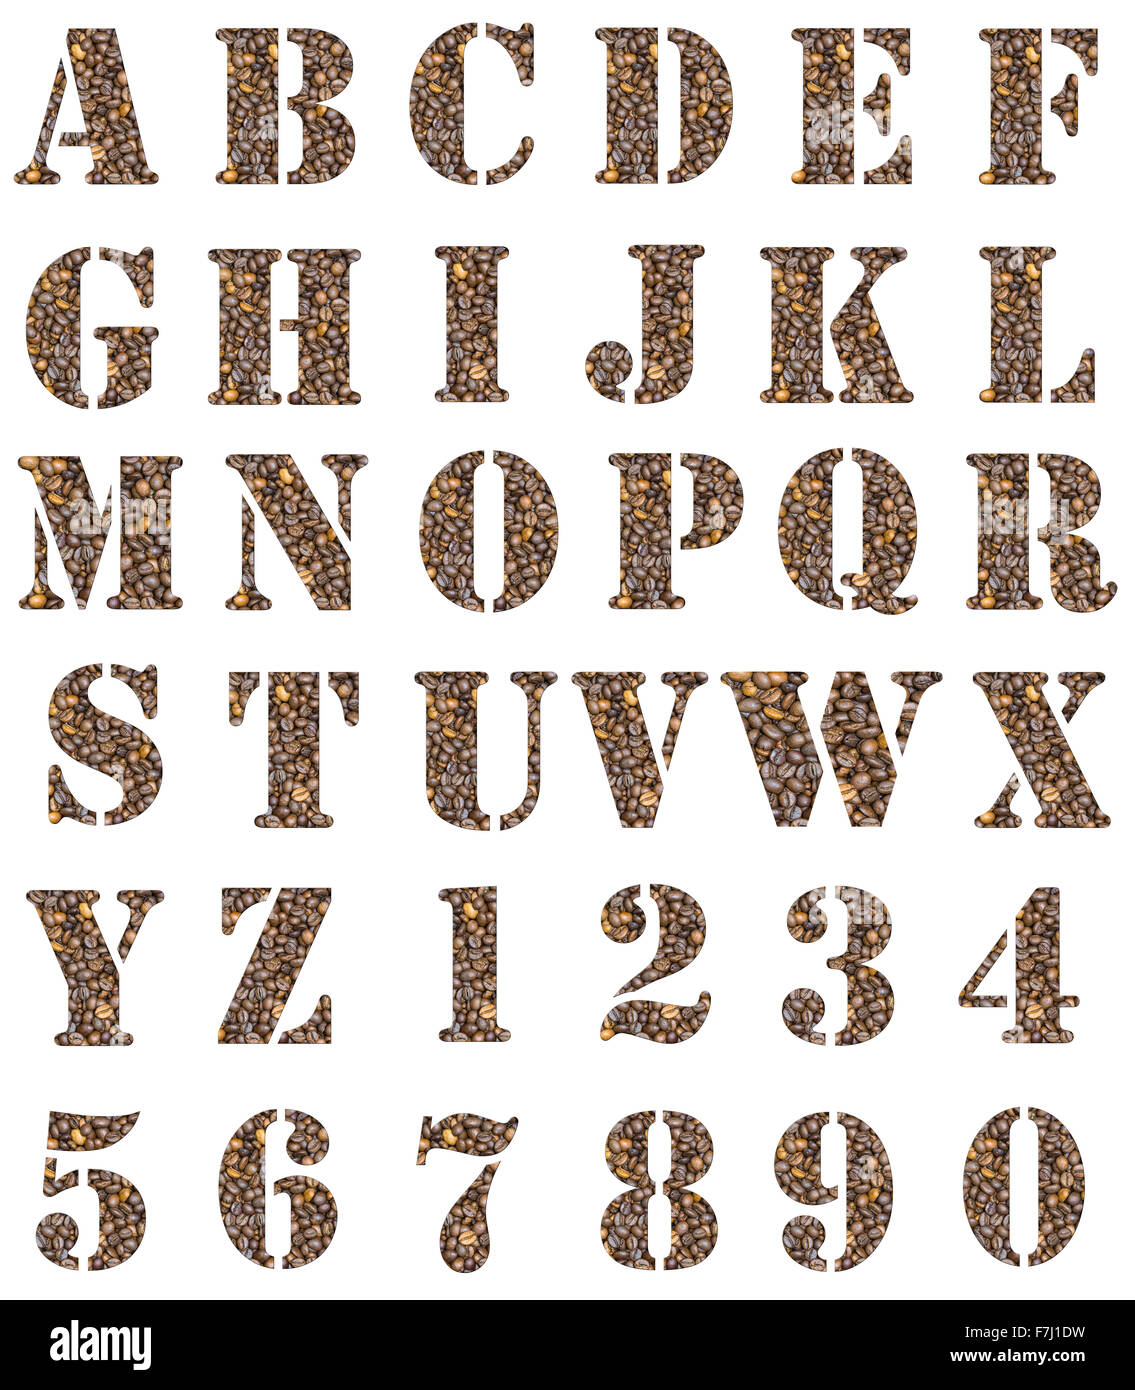 Kaffee Alphabet Buchstaben und Zahlen, die isoliert auf weiss. Braunen Kaffeebohnen als Hintergrund für diese Schriftart verwendet Stockfoto